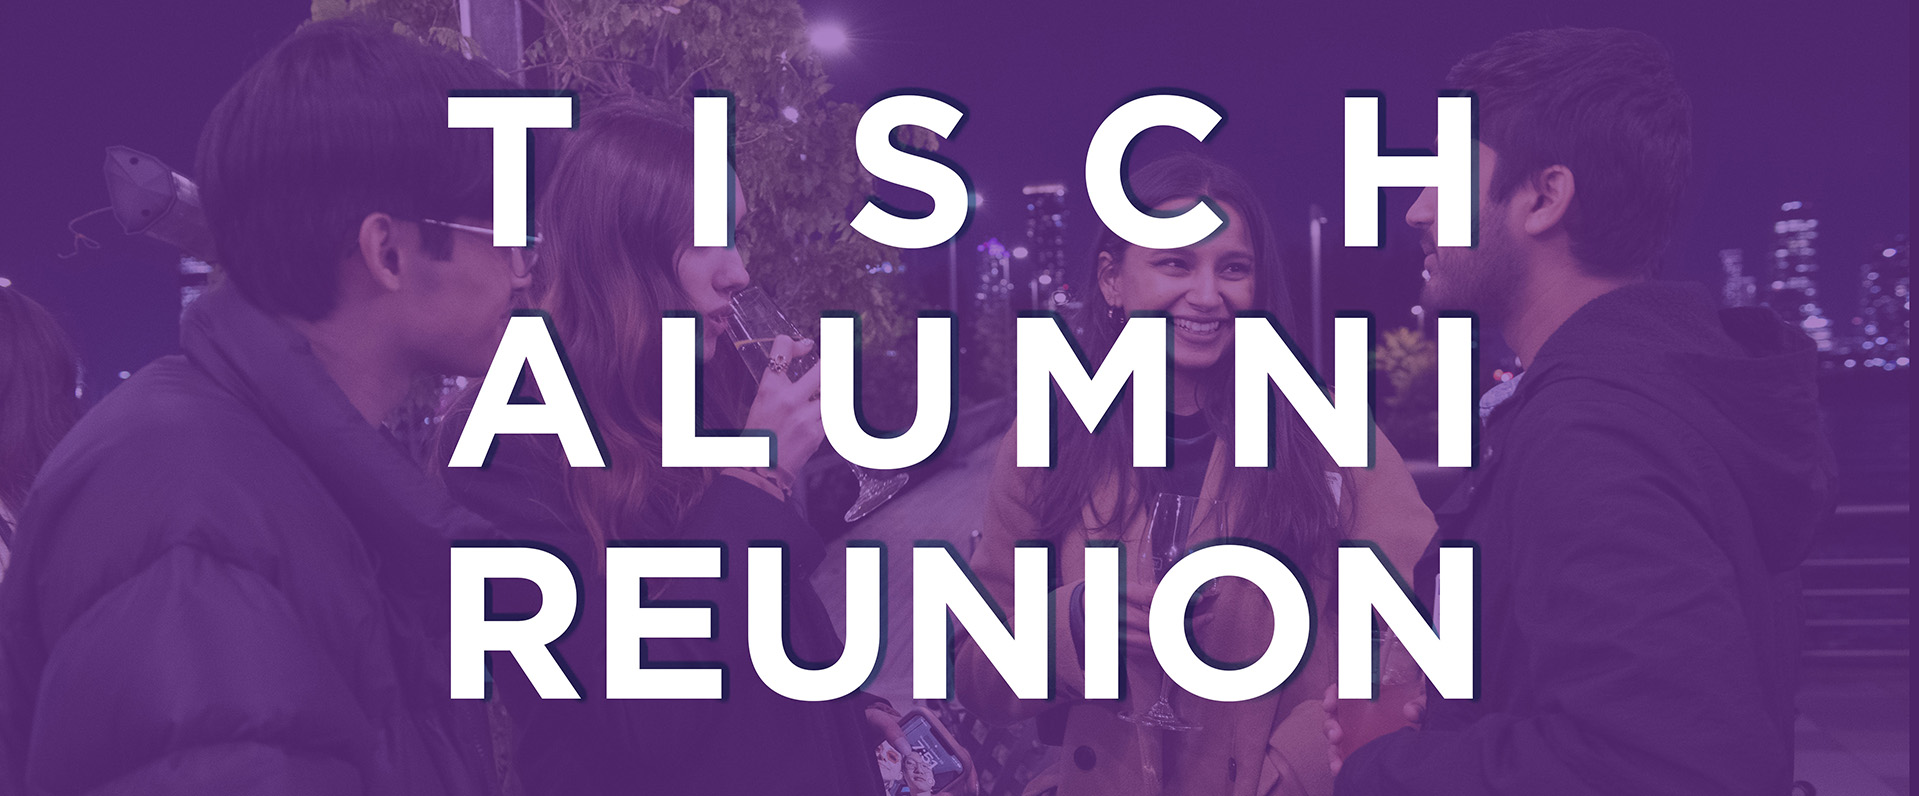 Tisch Alumni Reunion